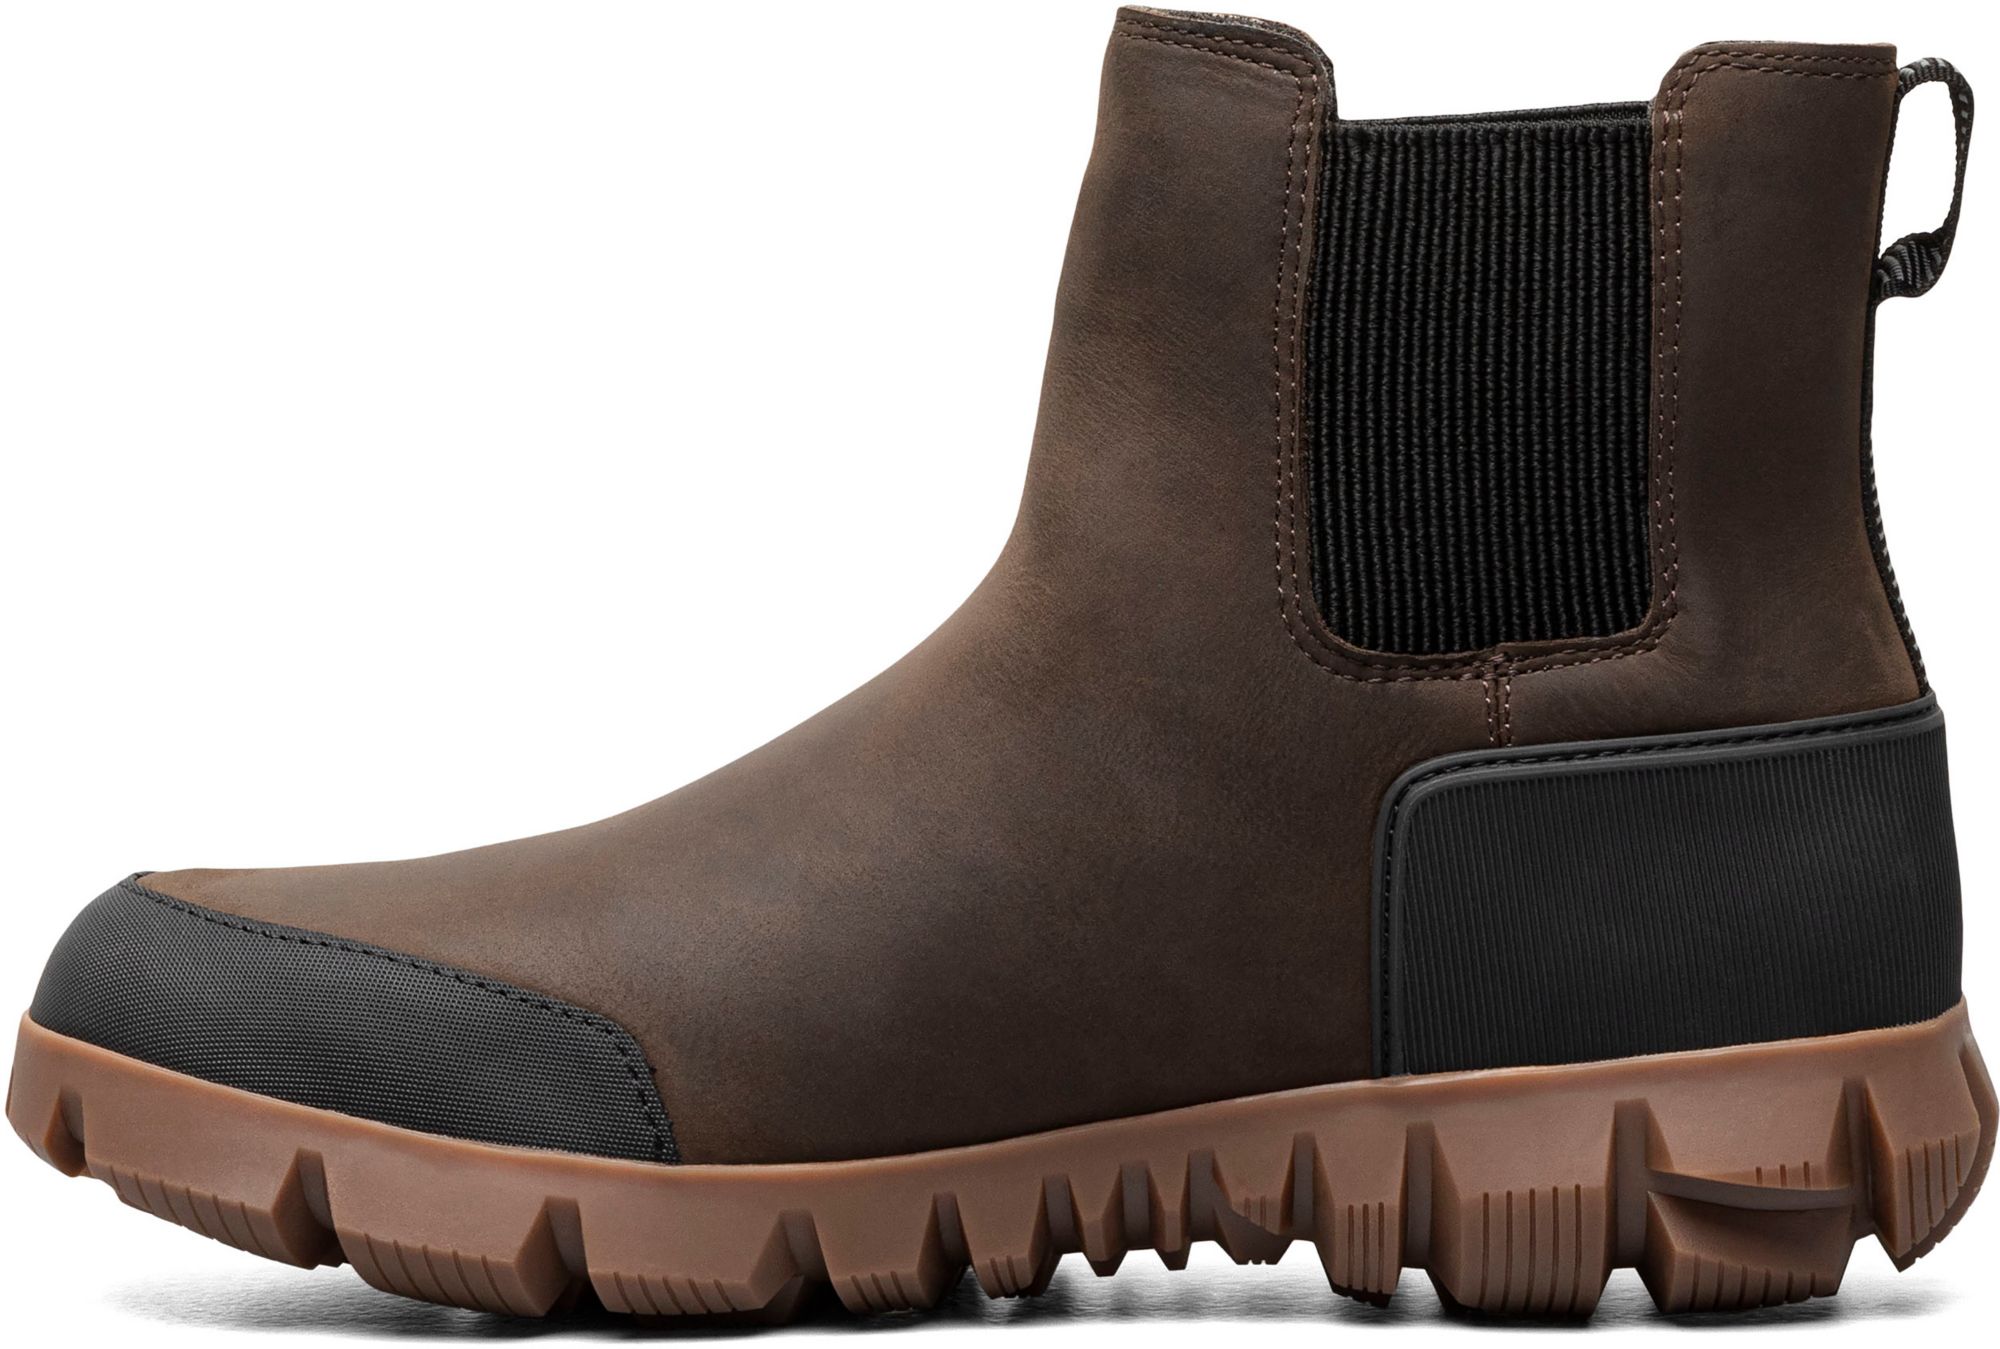 Bogs Men's Arcata Urban Leather Chelsea Waterproof Winter Boots